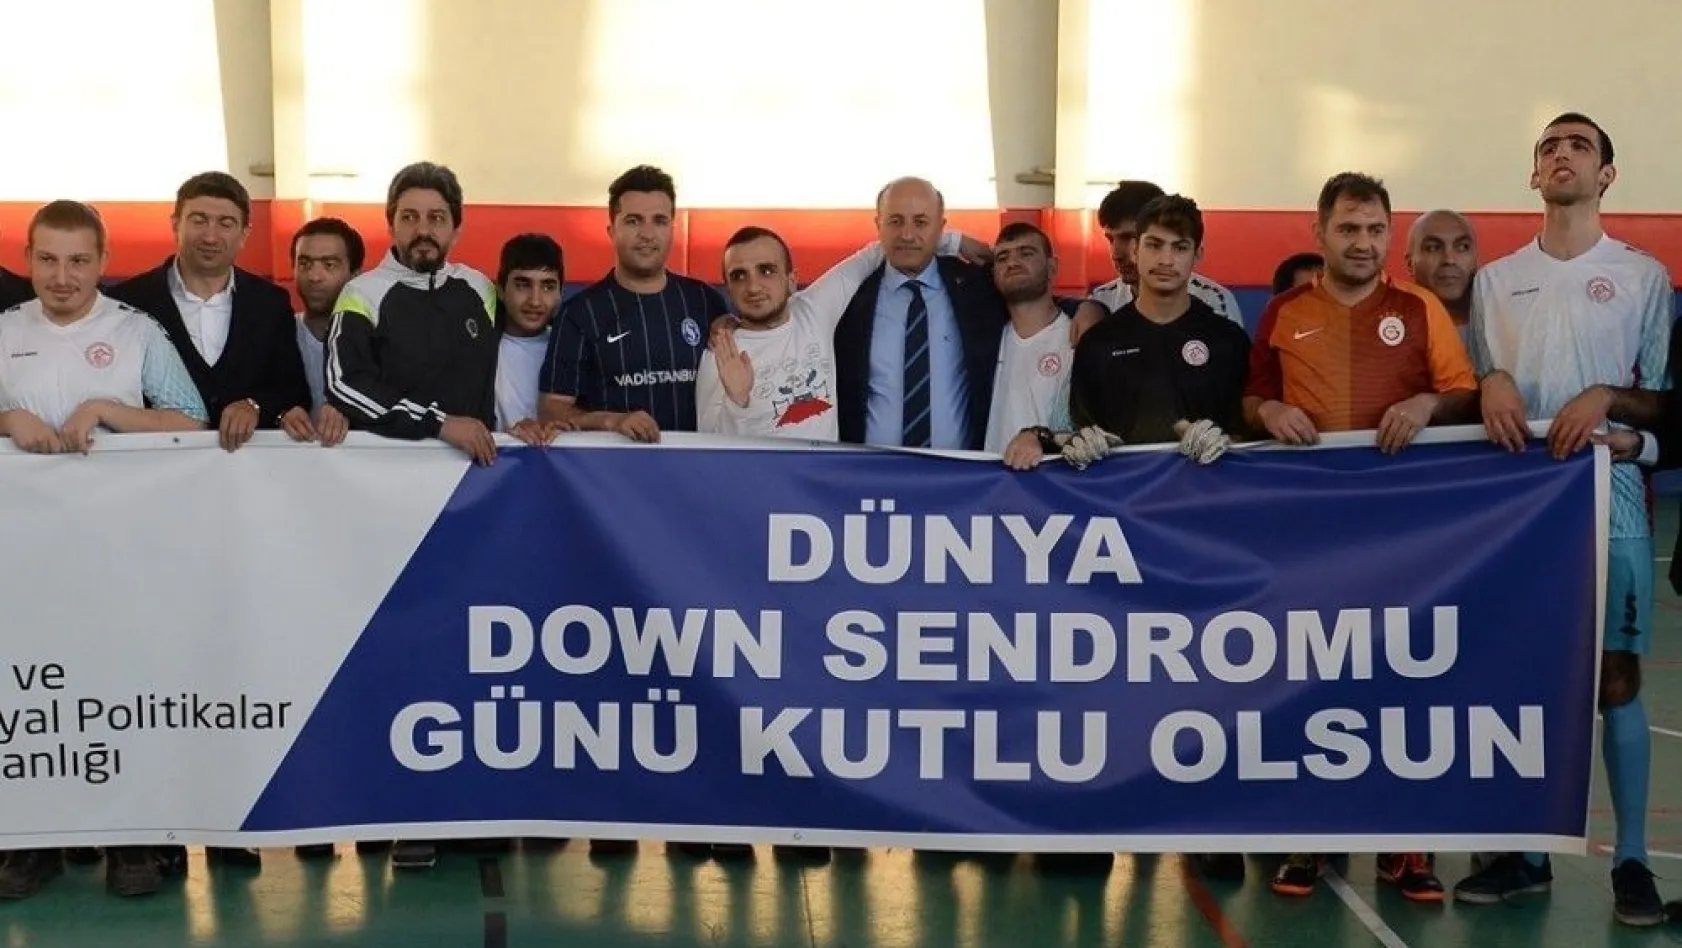 Vali Azizoğlu down sendromlu gençlerle futbol maçı yaptı
